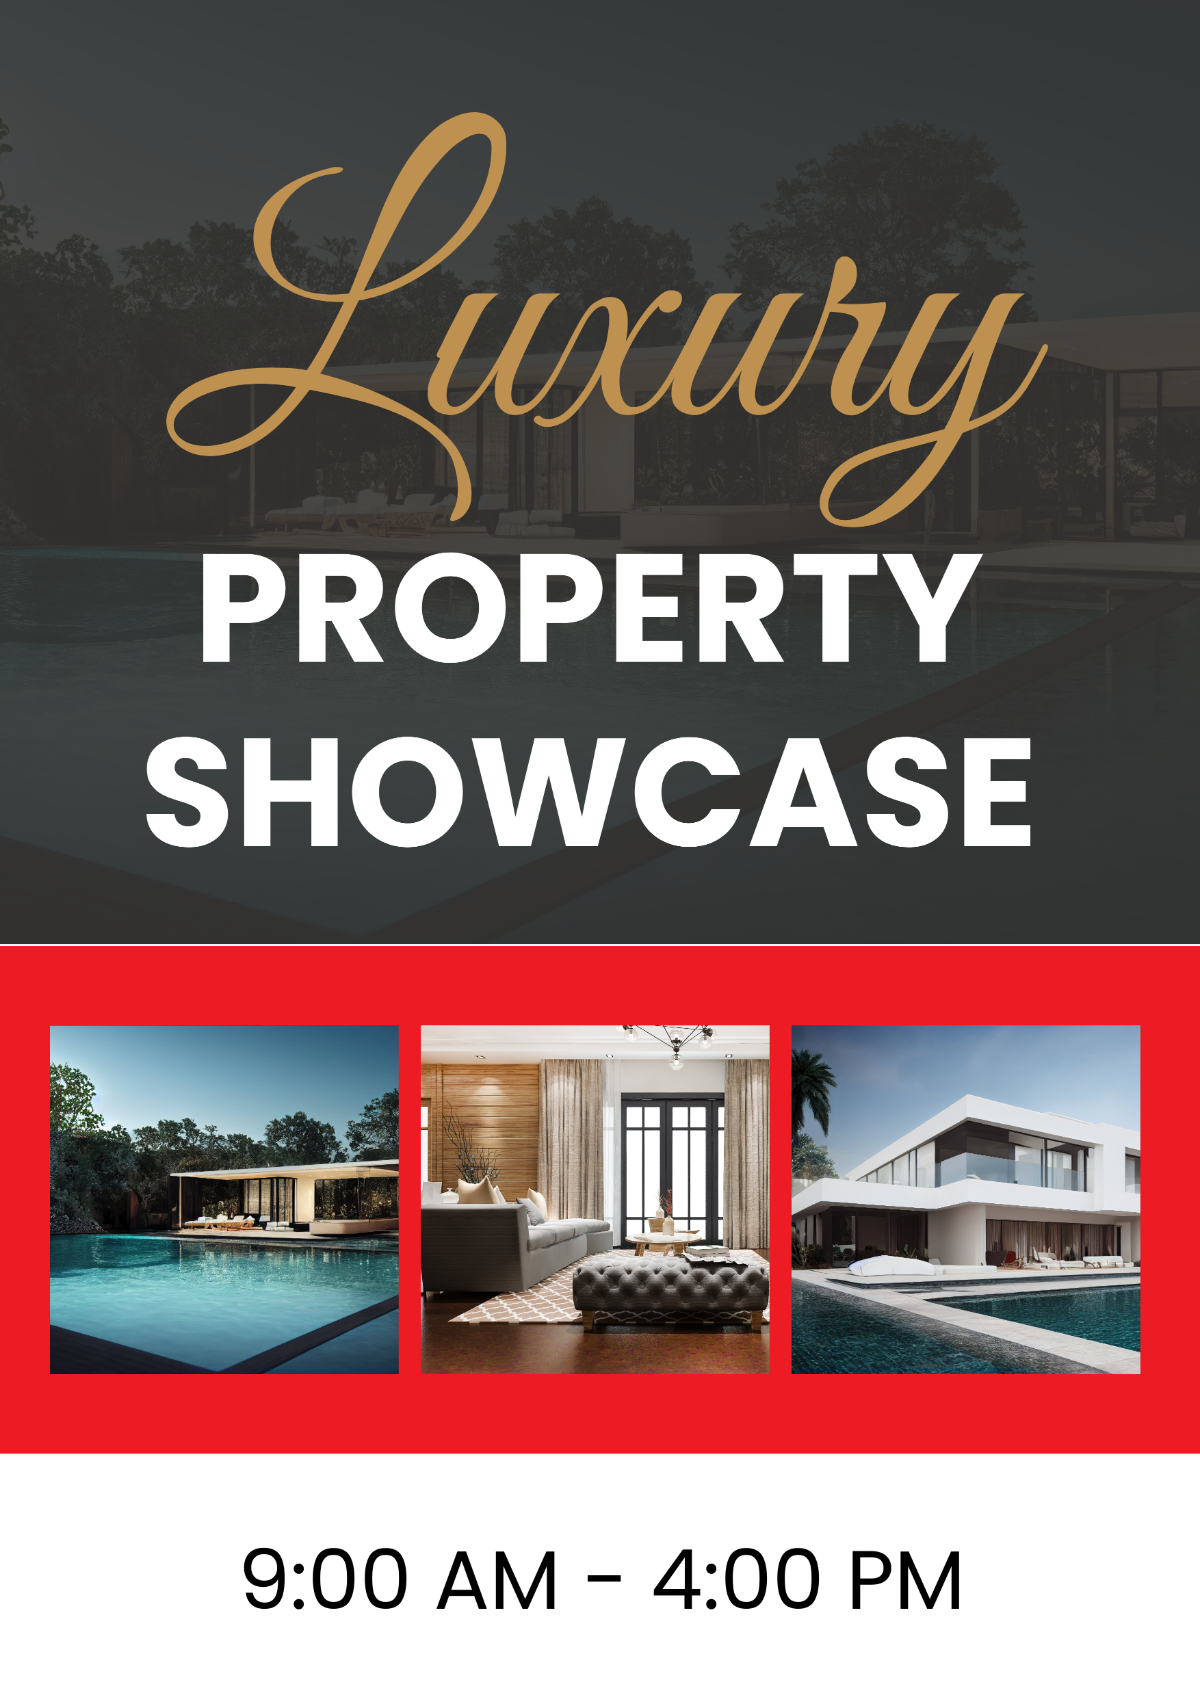 Luxury Property Showcase Signage Template